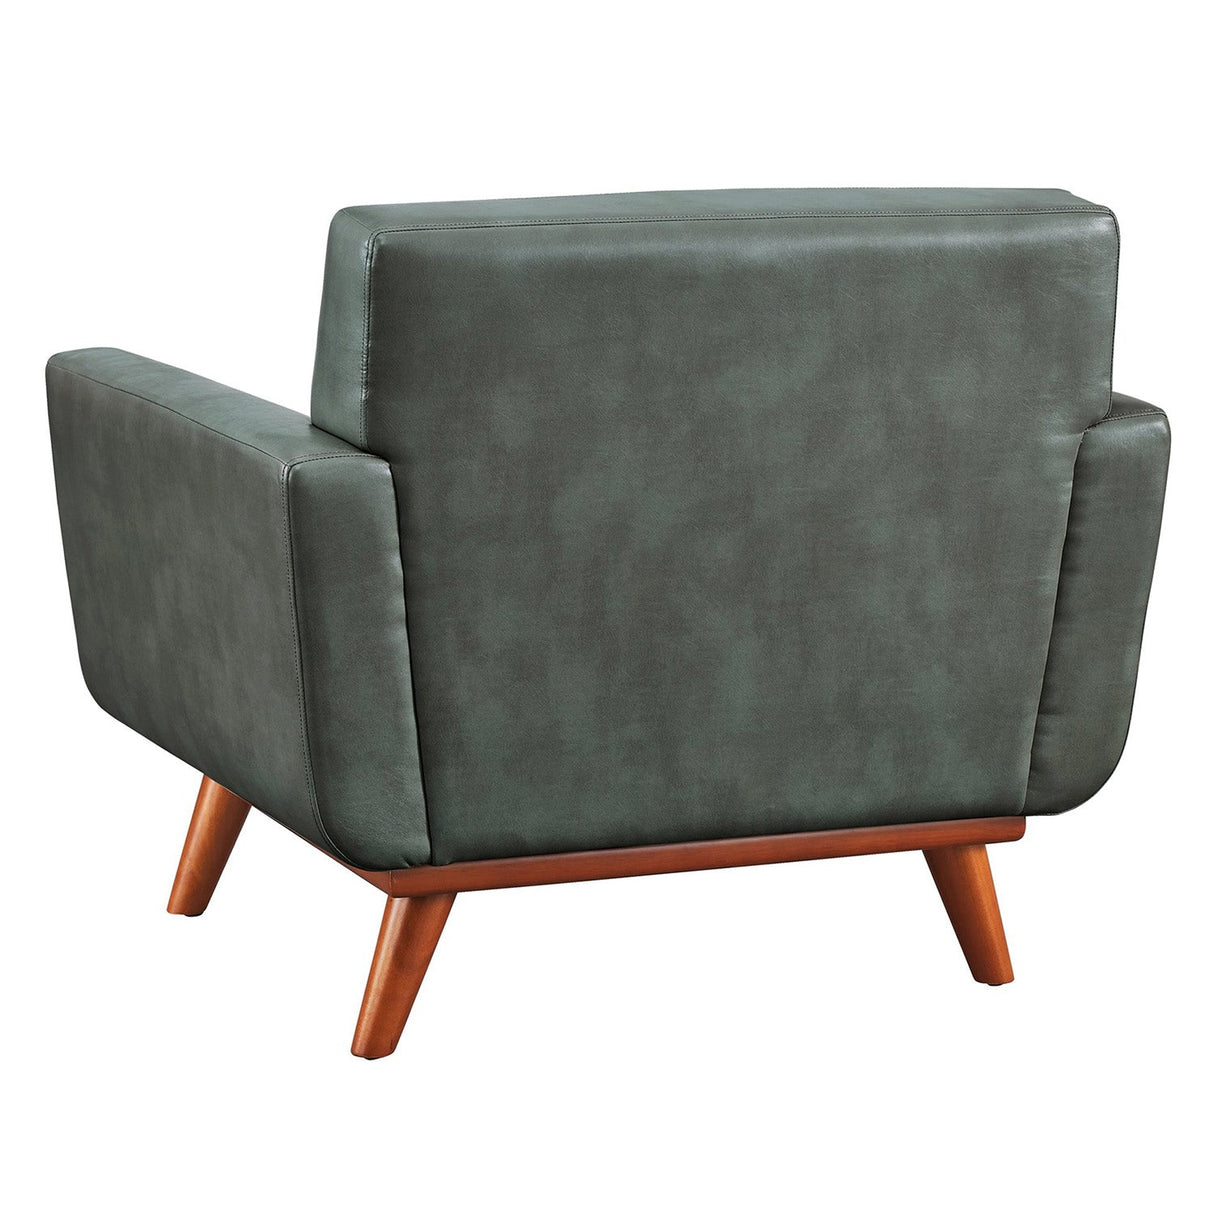 Tov Furniture Lyon Smoke Gray Leather Chair